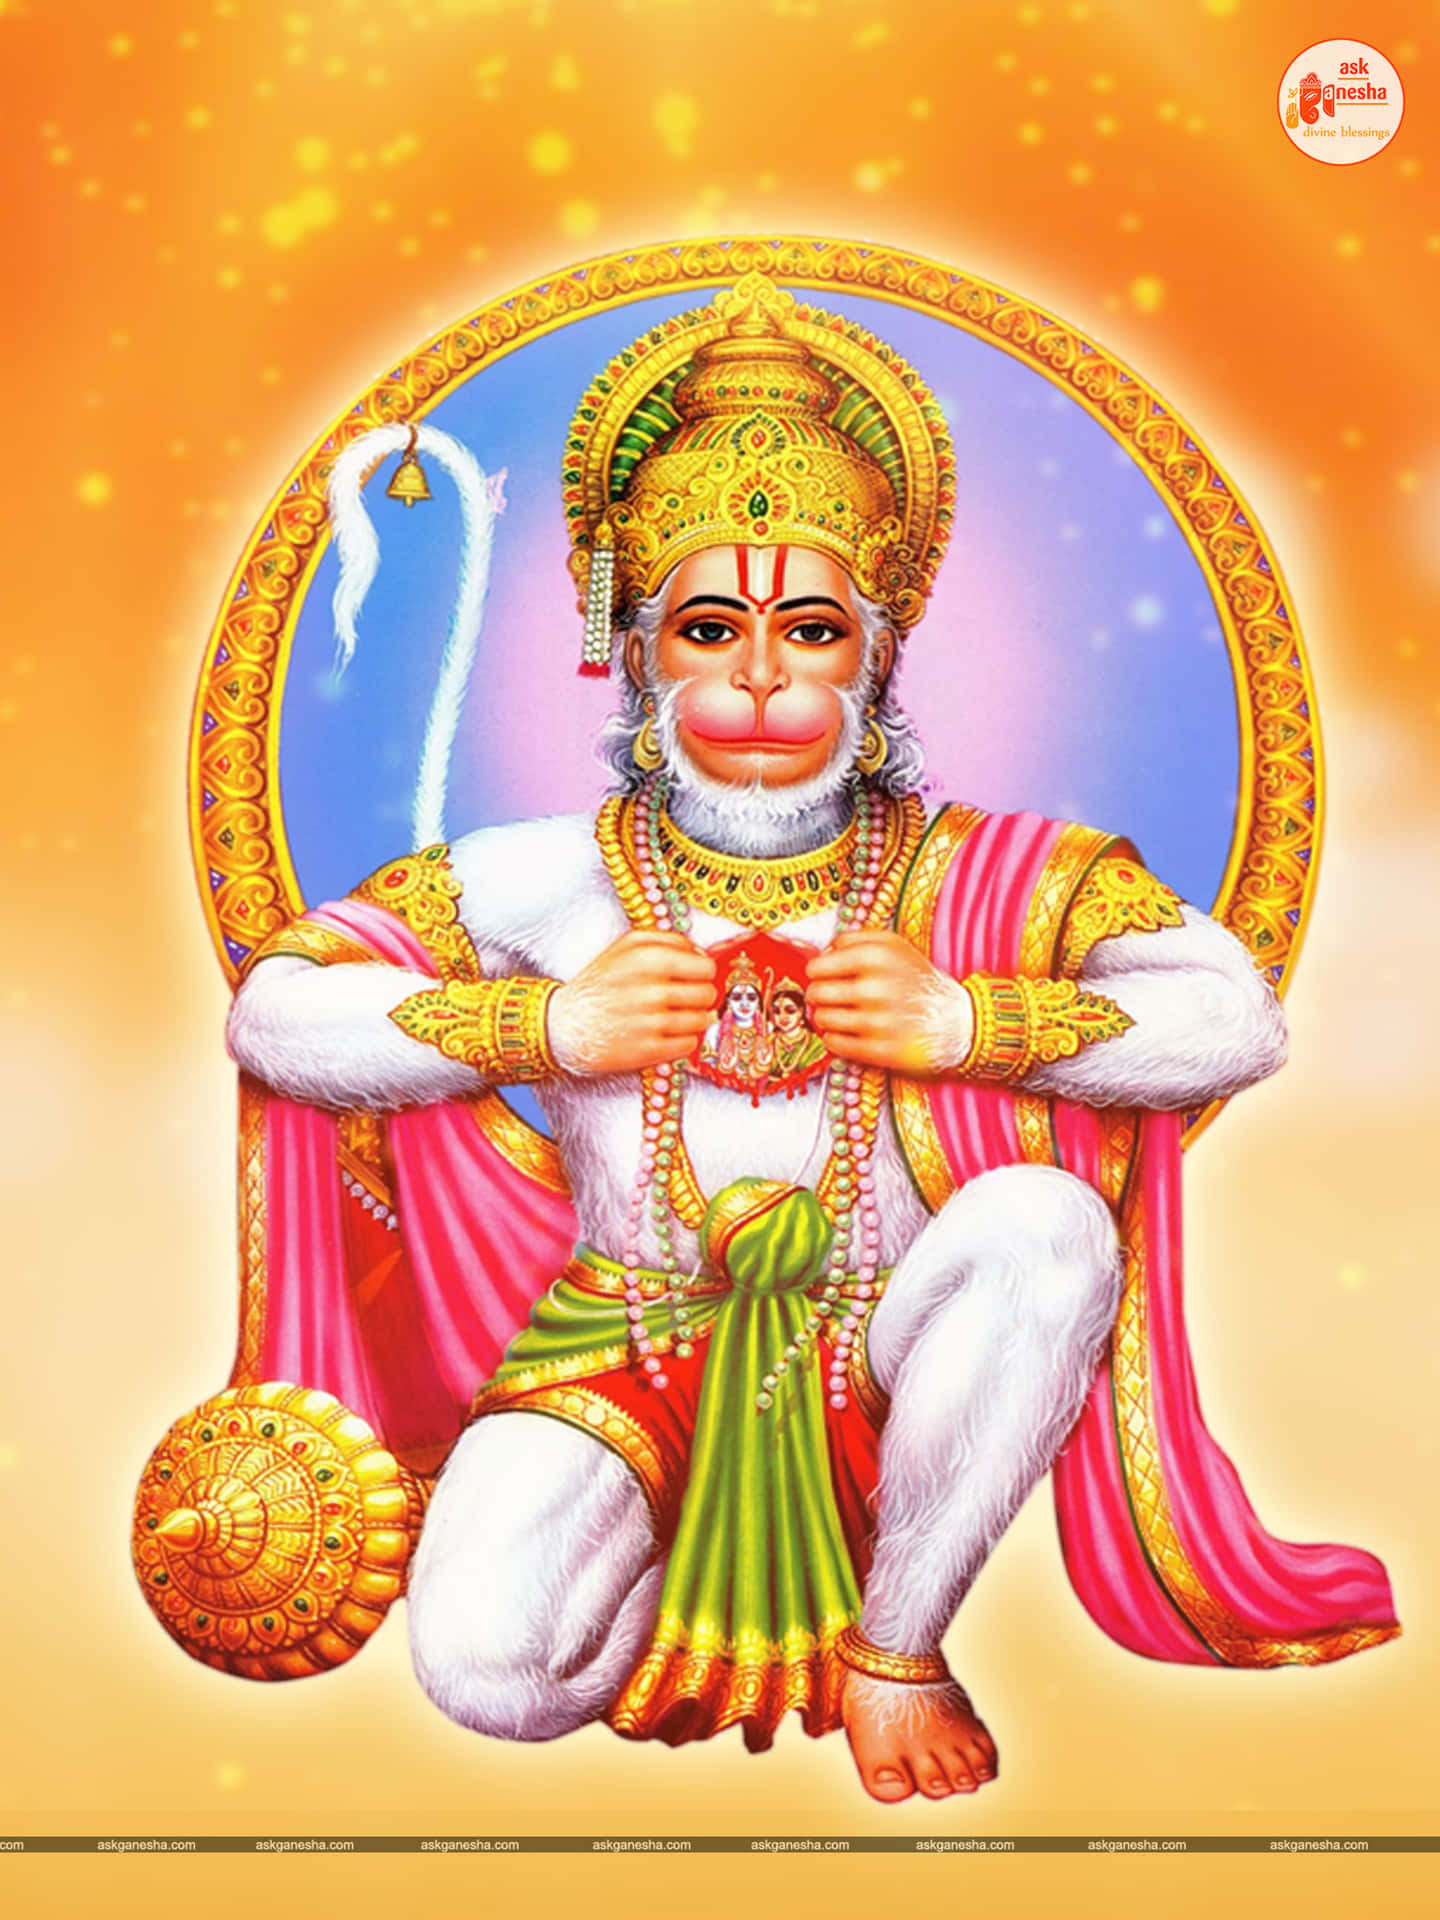 Lord Hanuman, the loyal devotee of Lord Rama